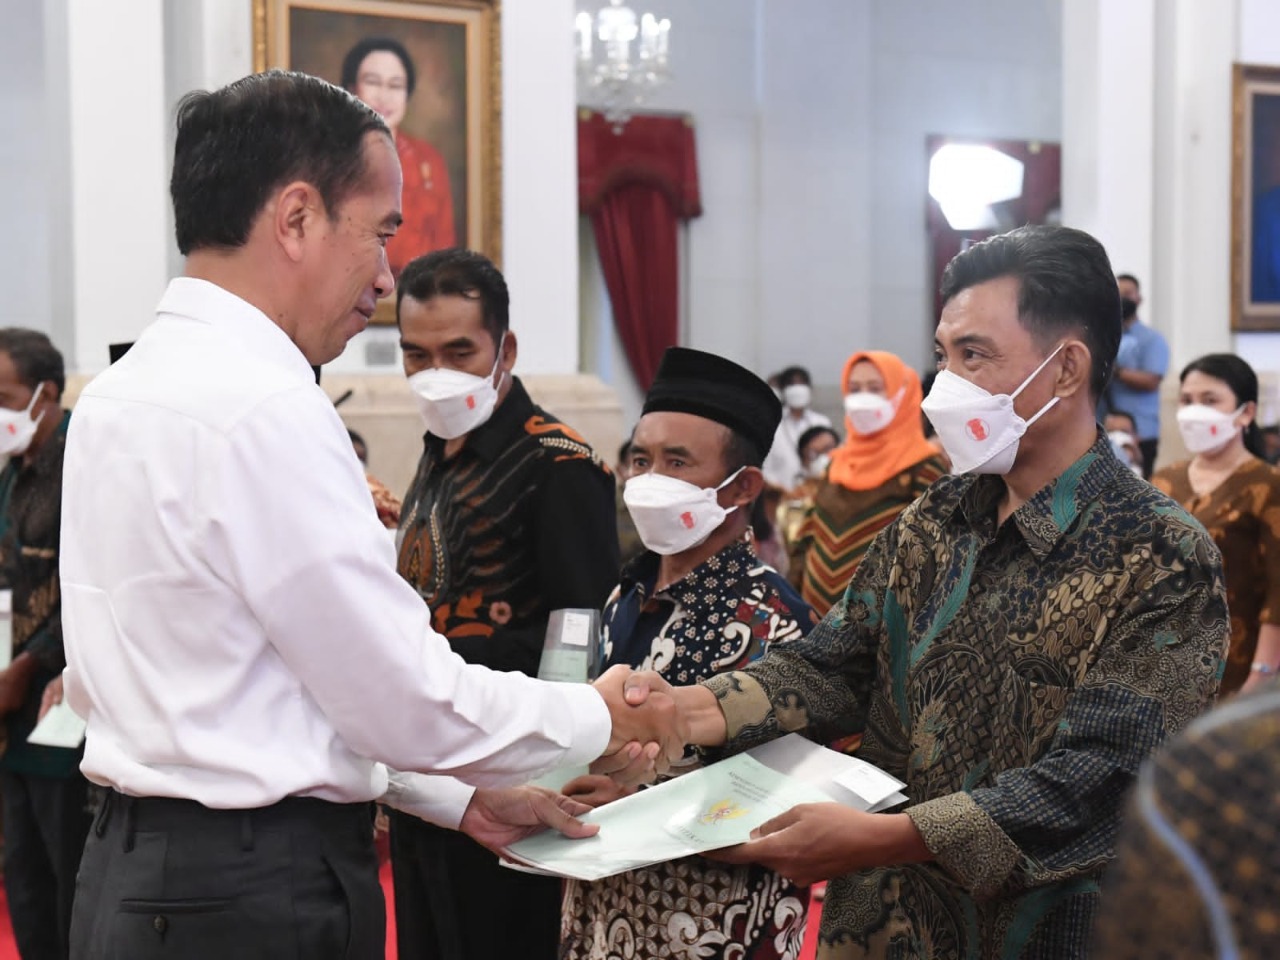 Presiden Jokowi: Kalau Sudah Pegang Sertipikat Semua Rakyat Adem